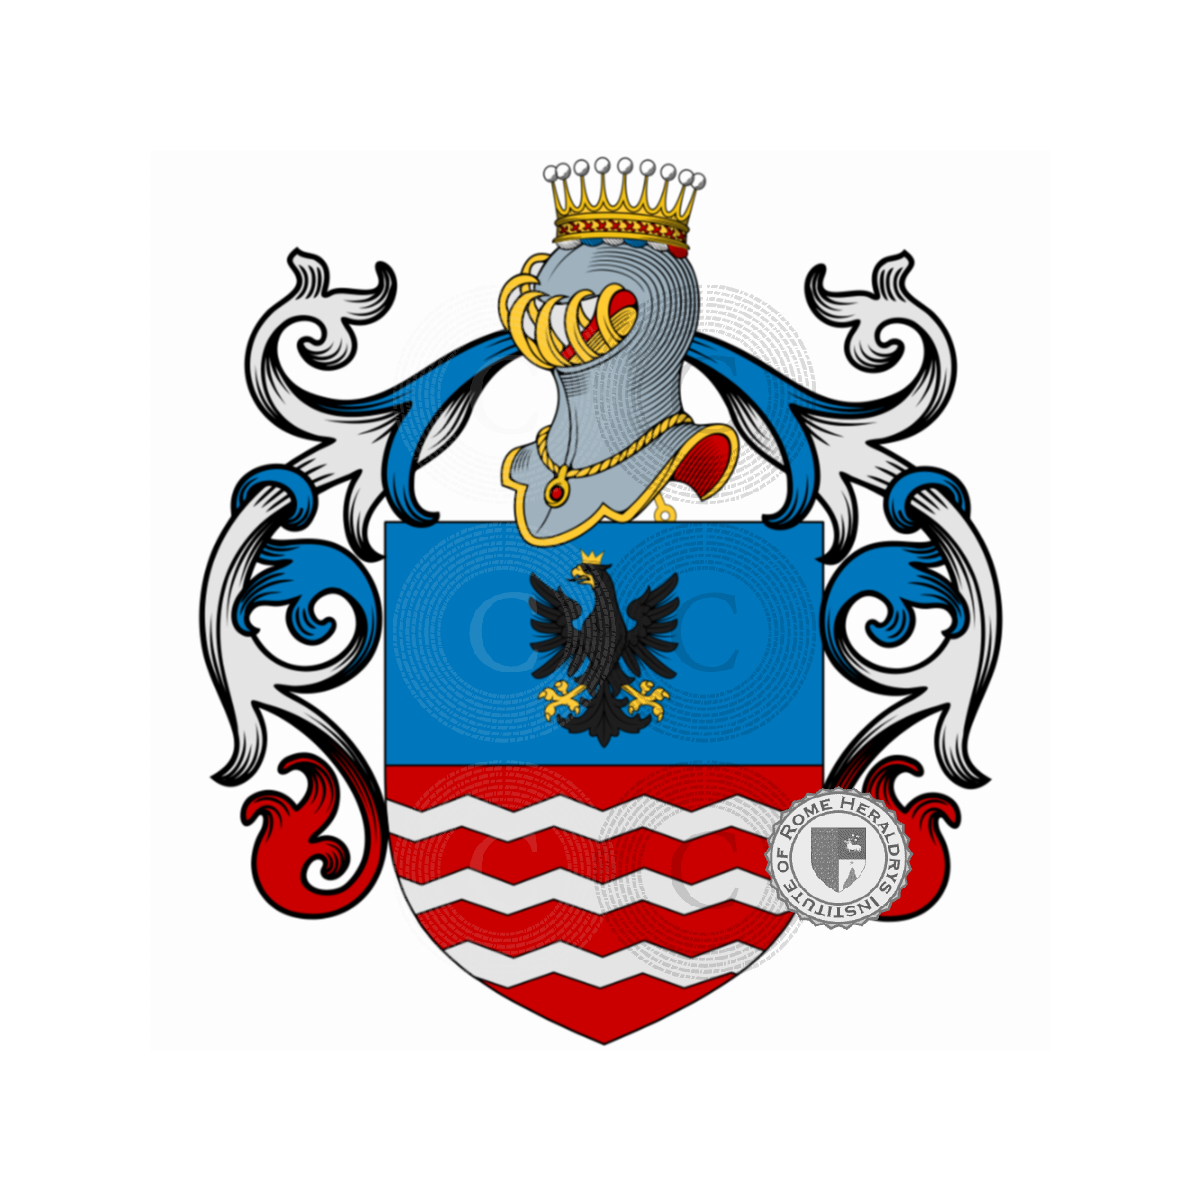 Wappen der FamilieReina, de Regni,de' Regni